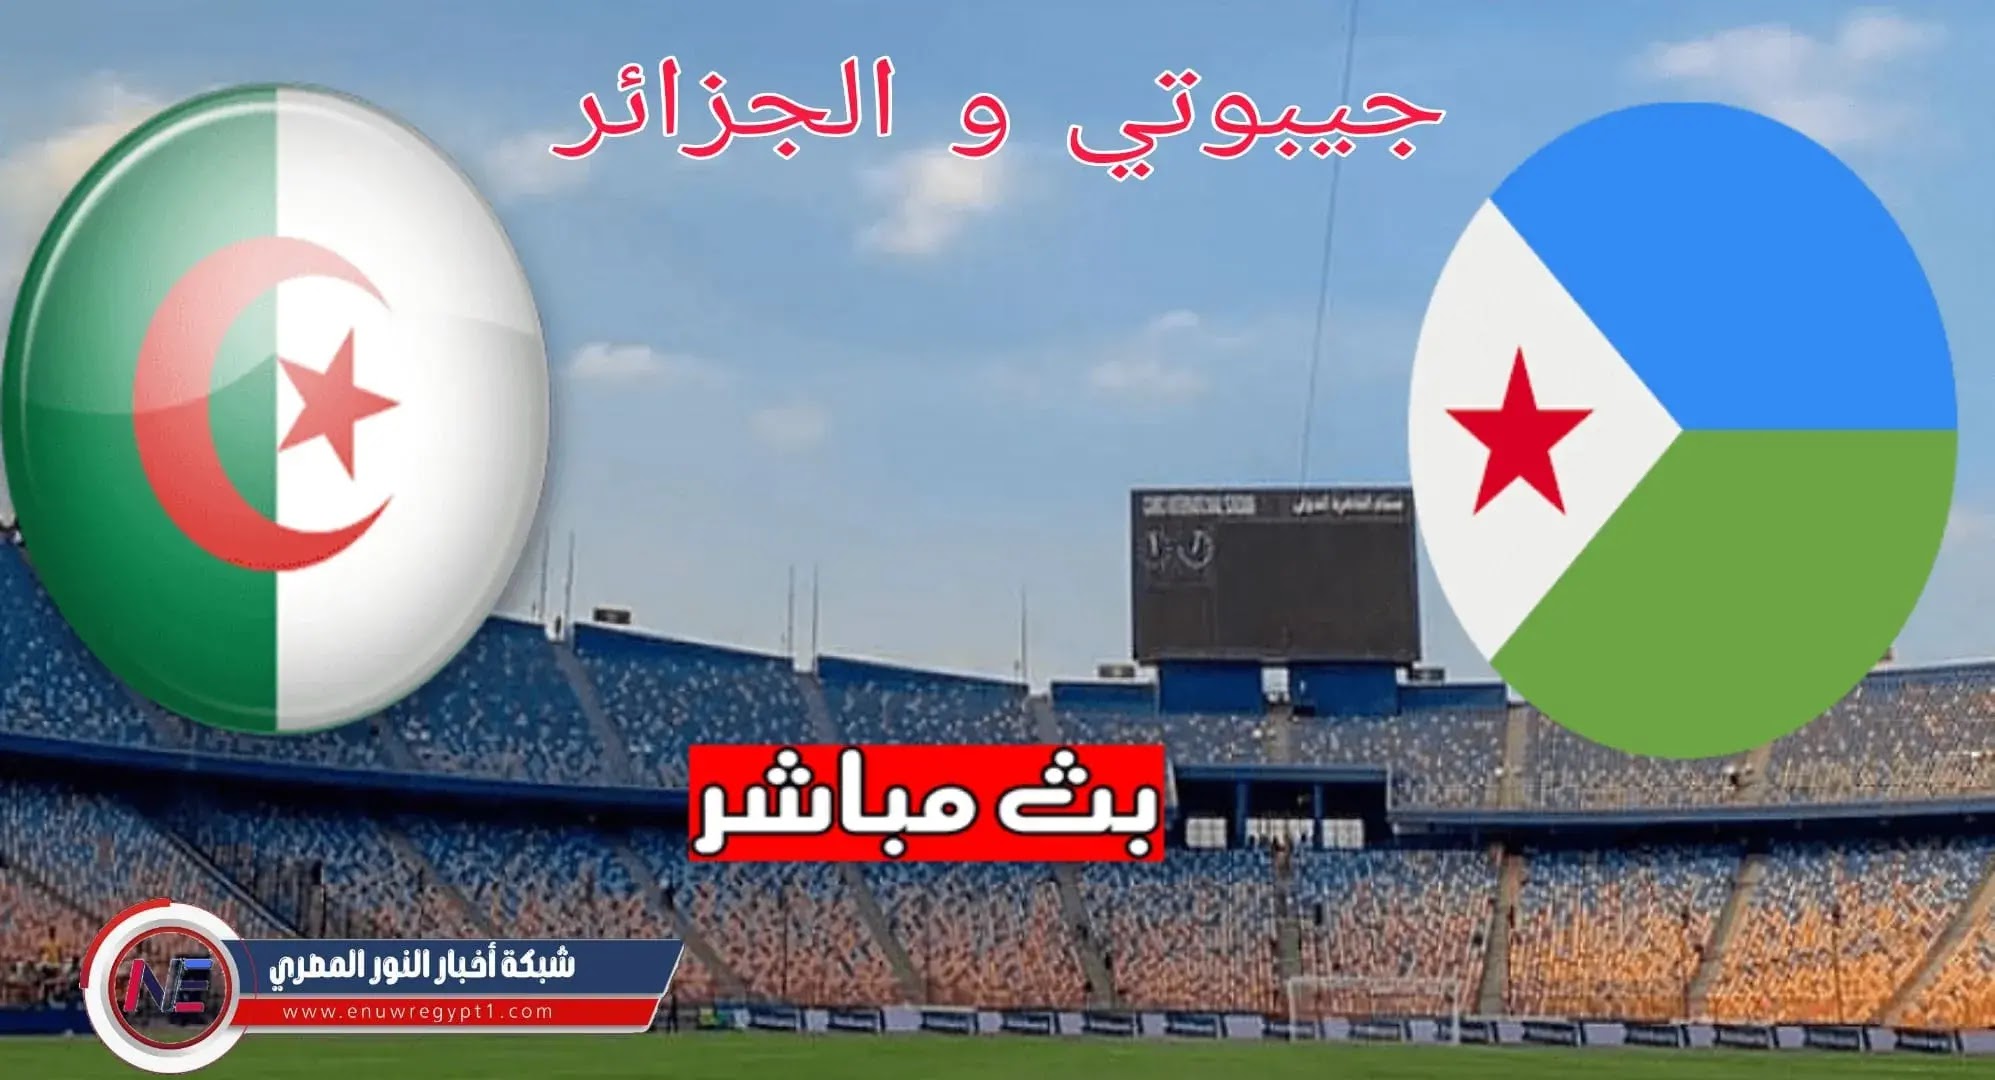 الان يلا شوت الجزائر و جيبوتي يوتيوب || مشاهدة مباراة الجزائر و جيبوتي بث مباشر اليوم 12-11-2021 في تصفيات كأس العالم بجودة عالية